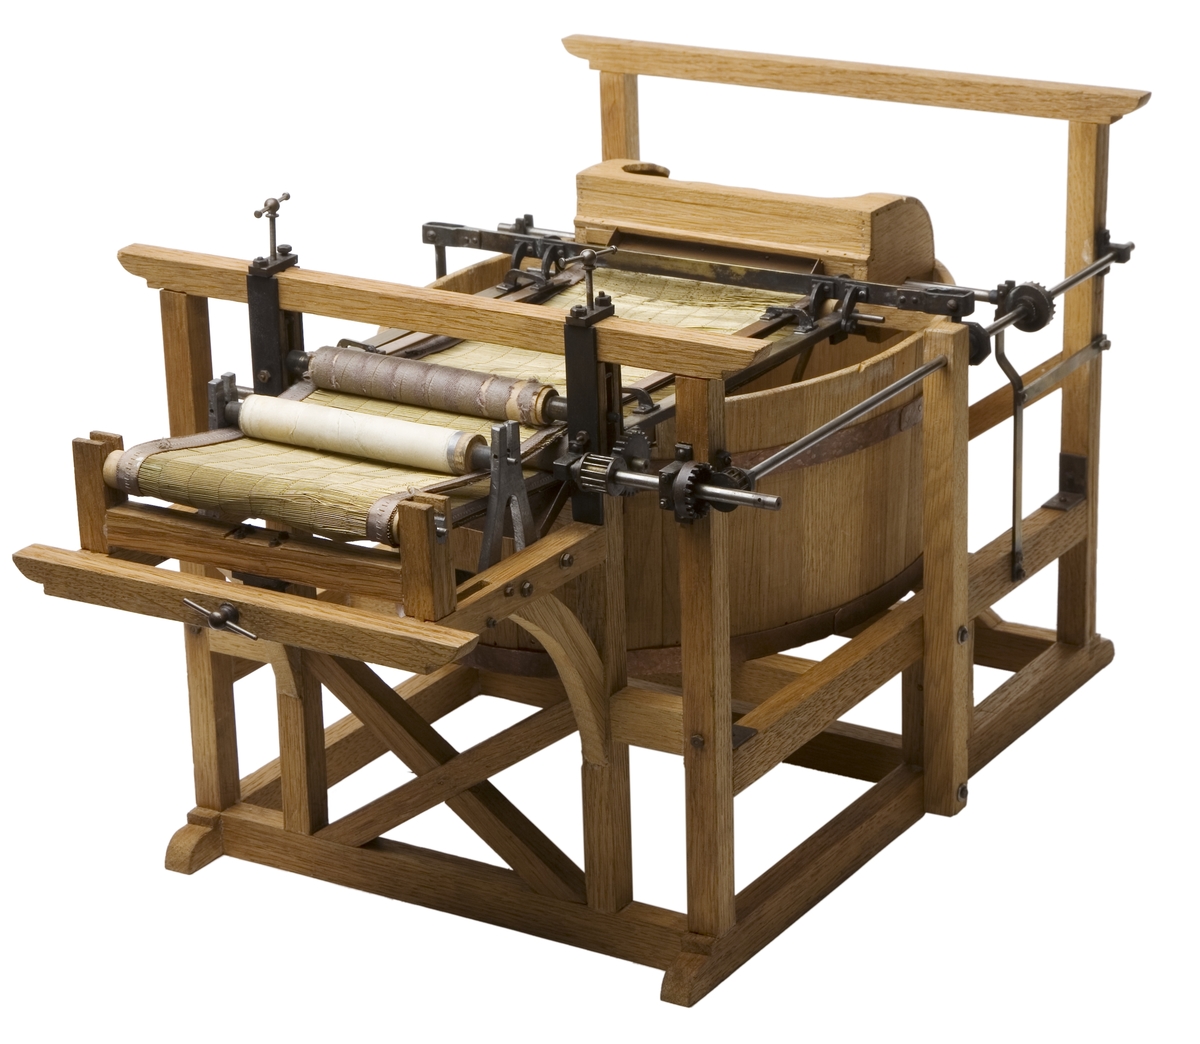 Modell i skala 1/5 av pappersmaskin, konstruerad av Nicolas-Louis Robert och LÃ¨ger Didot år 1798.